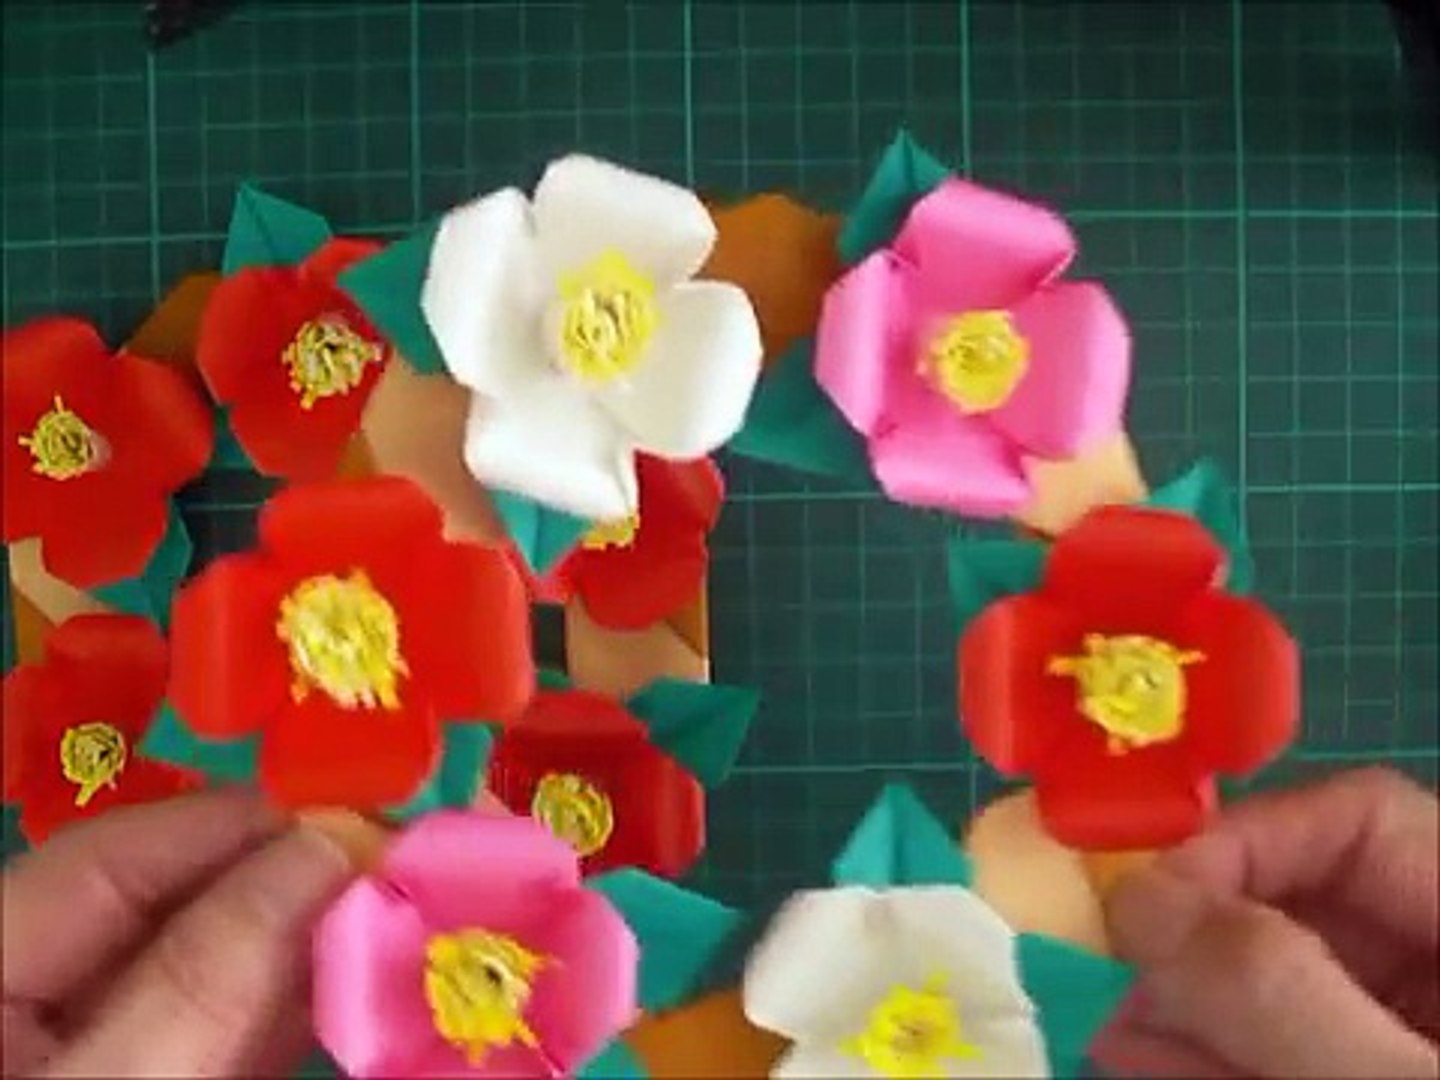 折り紙 椿の花のリース 簡単な折り方 Niceno1 Origami Camellia Flower Wreath Tutorial Muzwy4t2sw4 Video Dailymotion